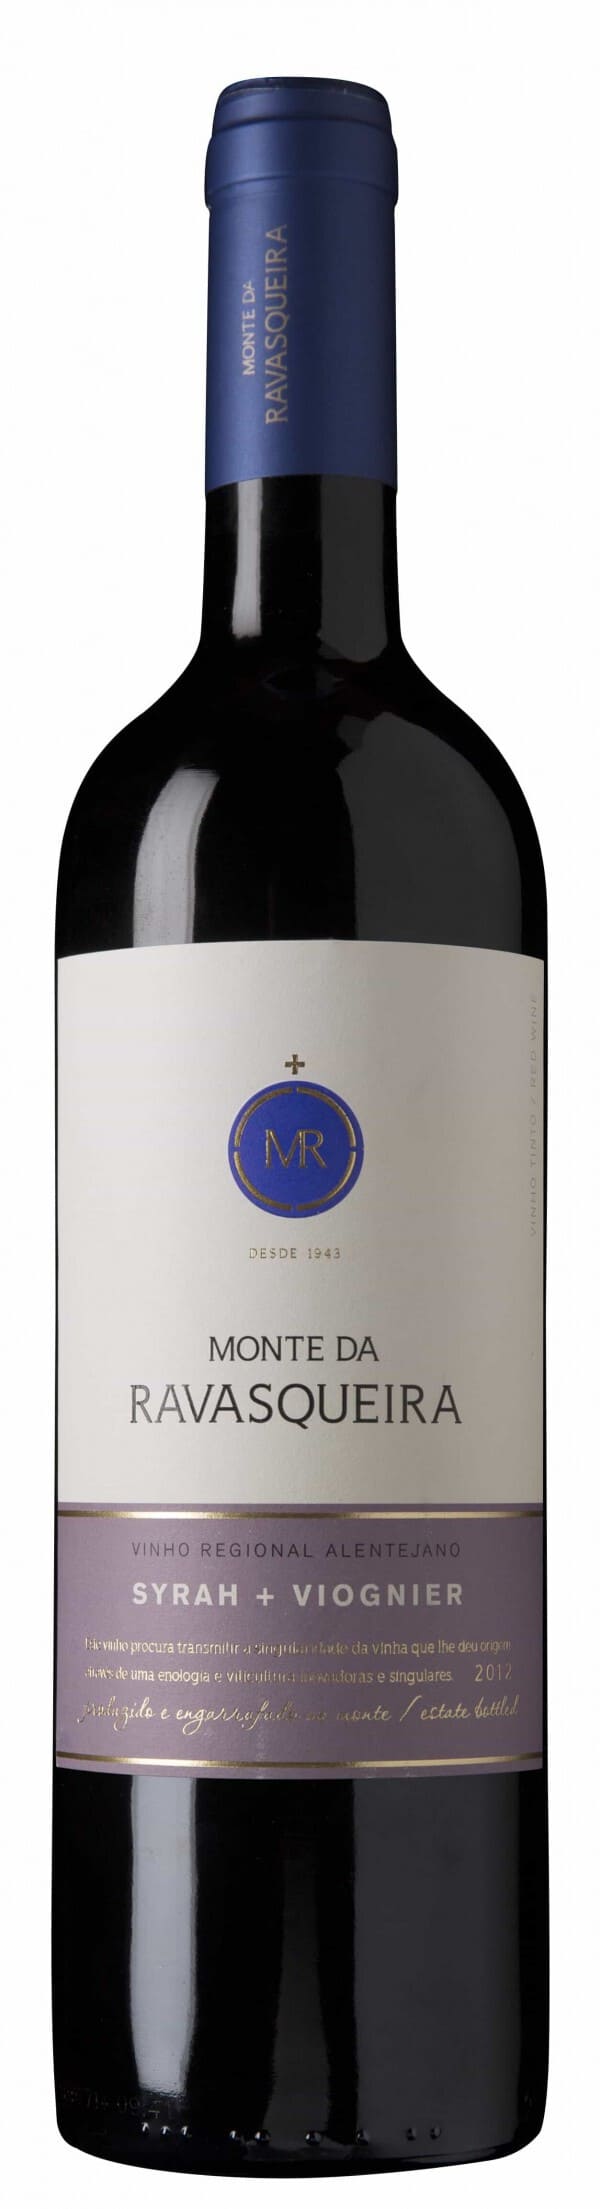 Portugalské víno Monte da Ravasqueira Syrah + Viognier na eshopu vín z Portugalska